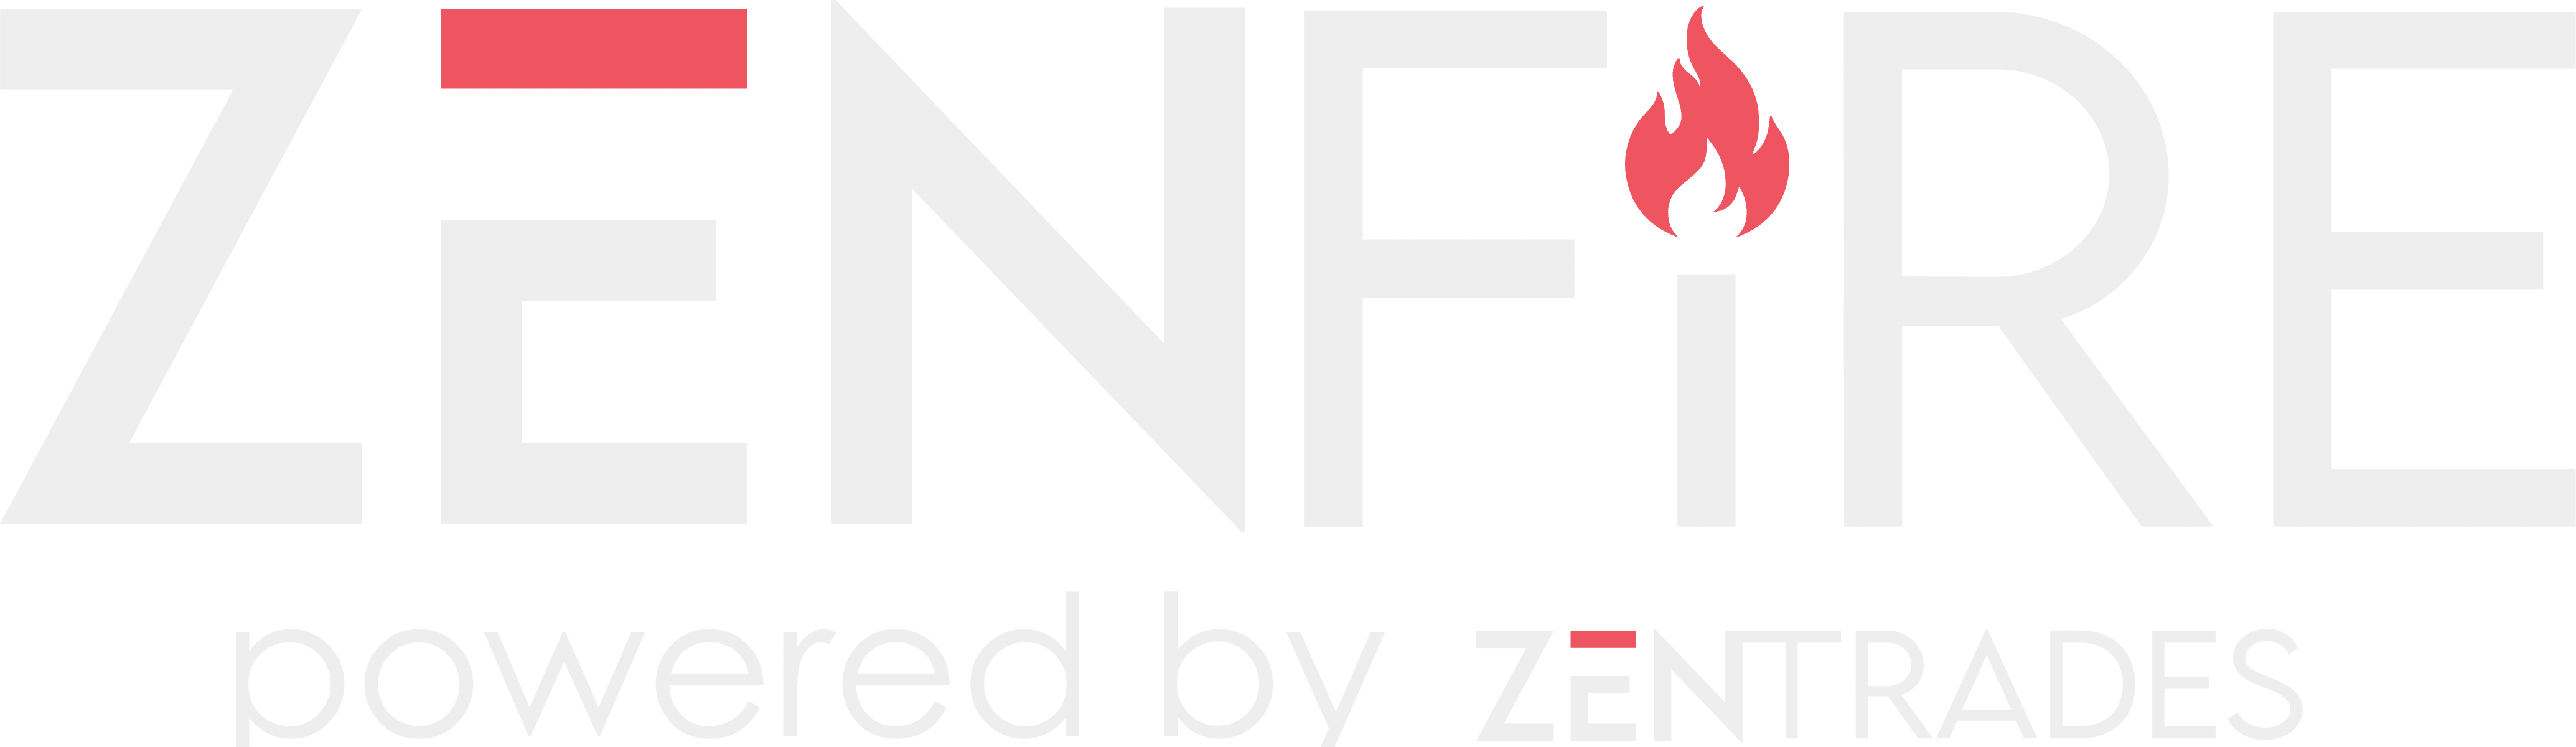 ZenFire | Fire Inspection Software